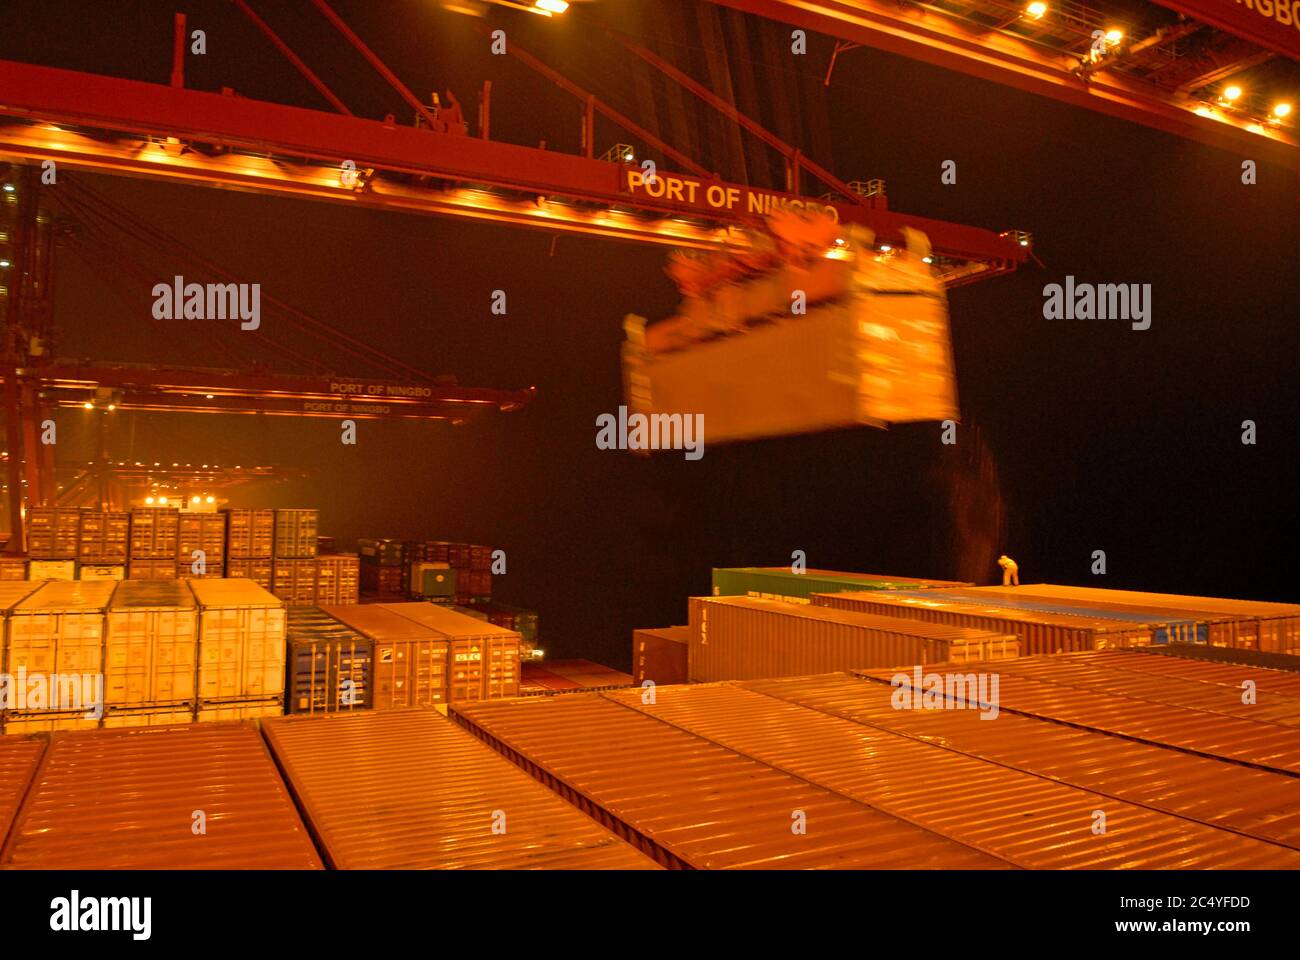 port de ningbo, chine - 12 janvier 2007 : le containership allemand jamais conquérir (9293818) décharger des conteneurs pendant les fortes pluies la nuit - Banque D'Images